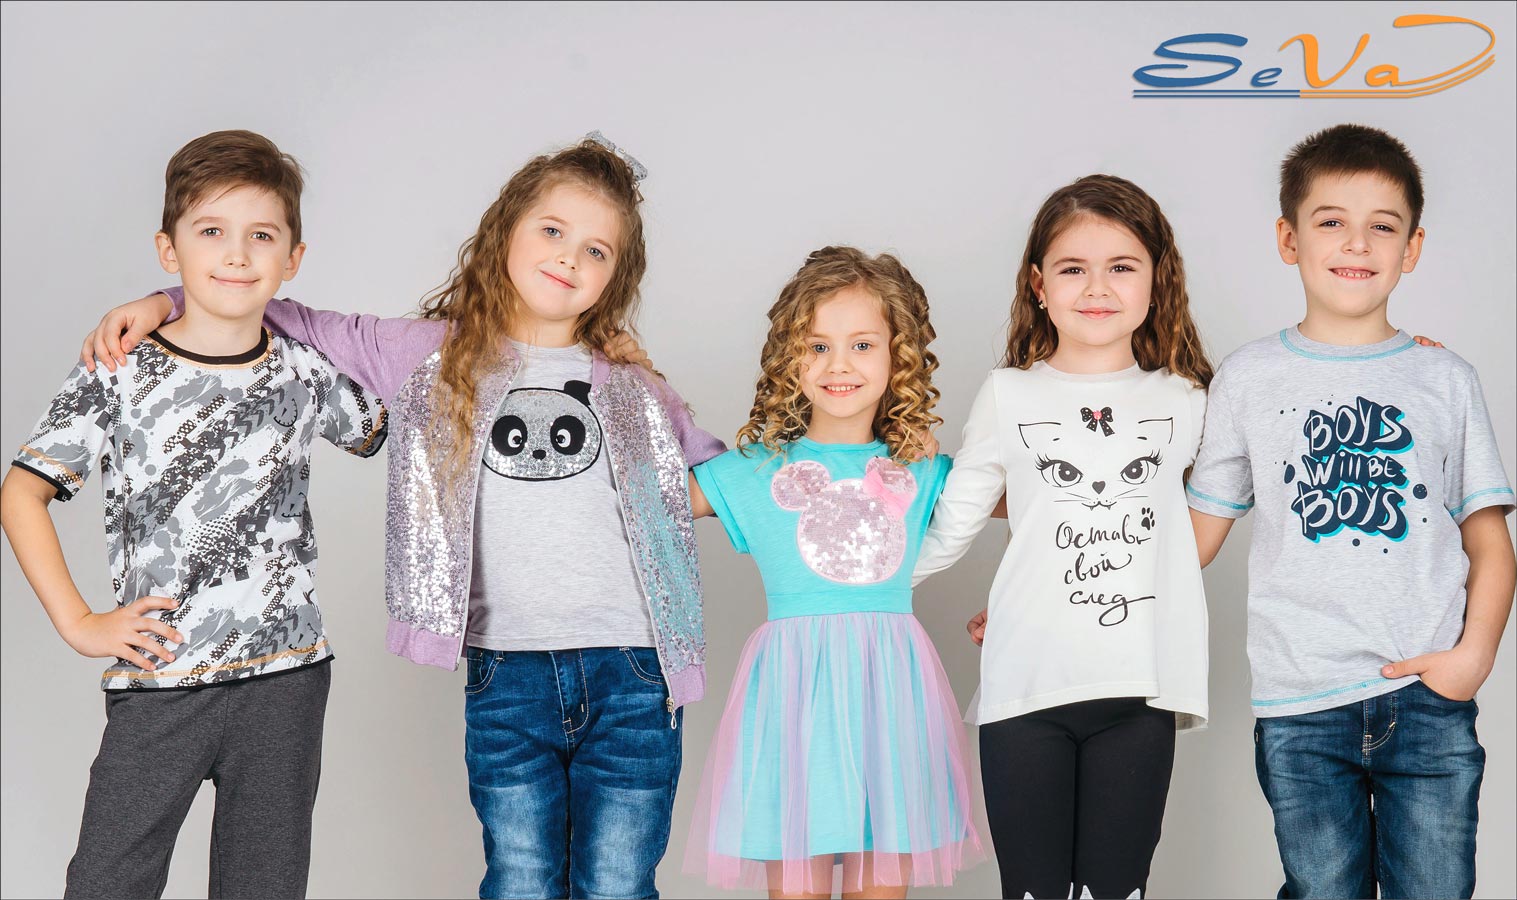 Трикотажный Интернет Магазин Детской Одежды